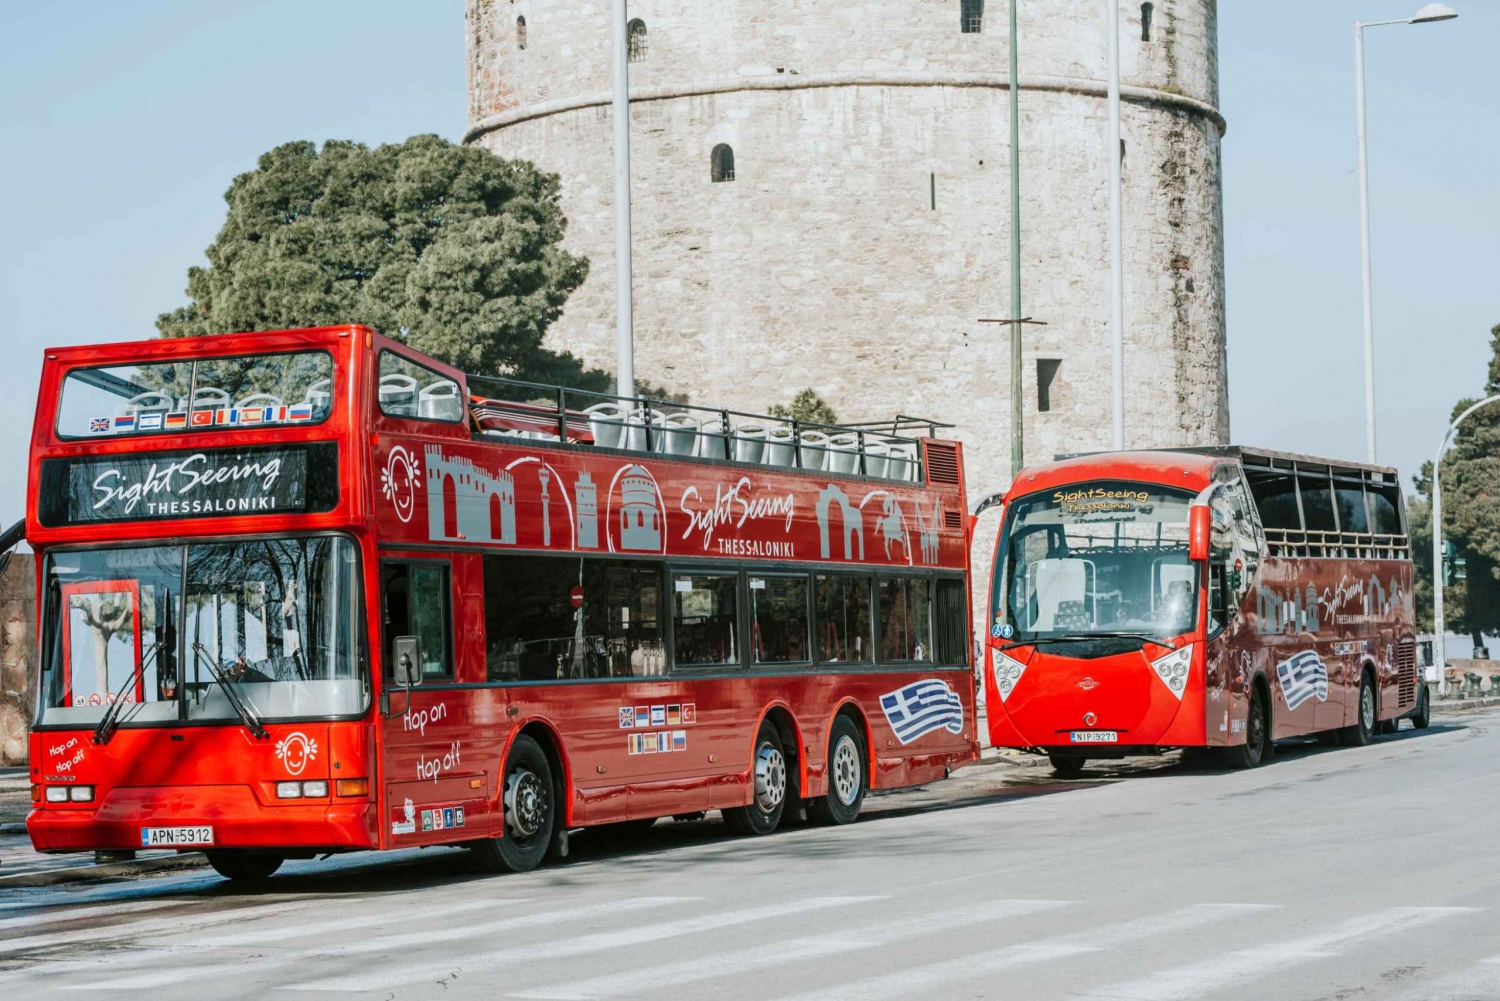 Visite de Thessalonique en bus touristique avec arrêt et montée à bord